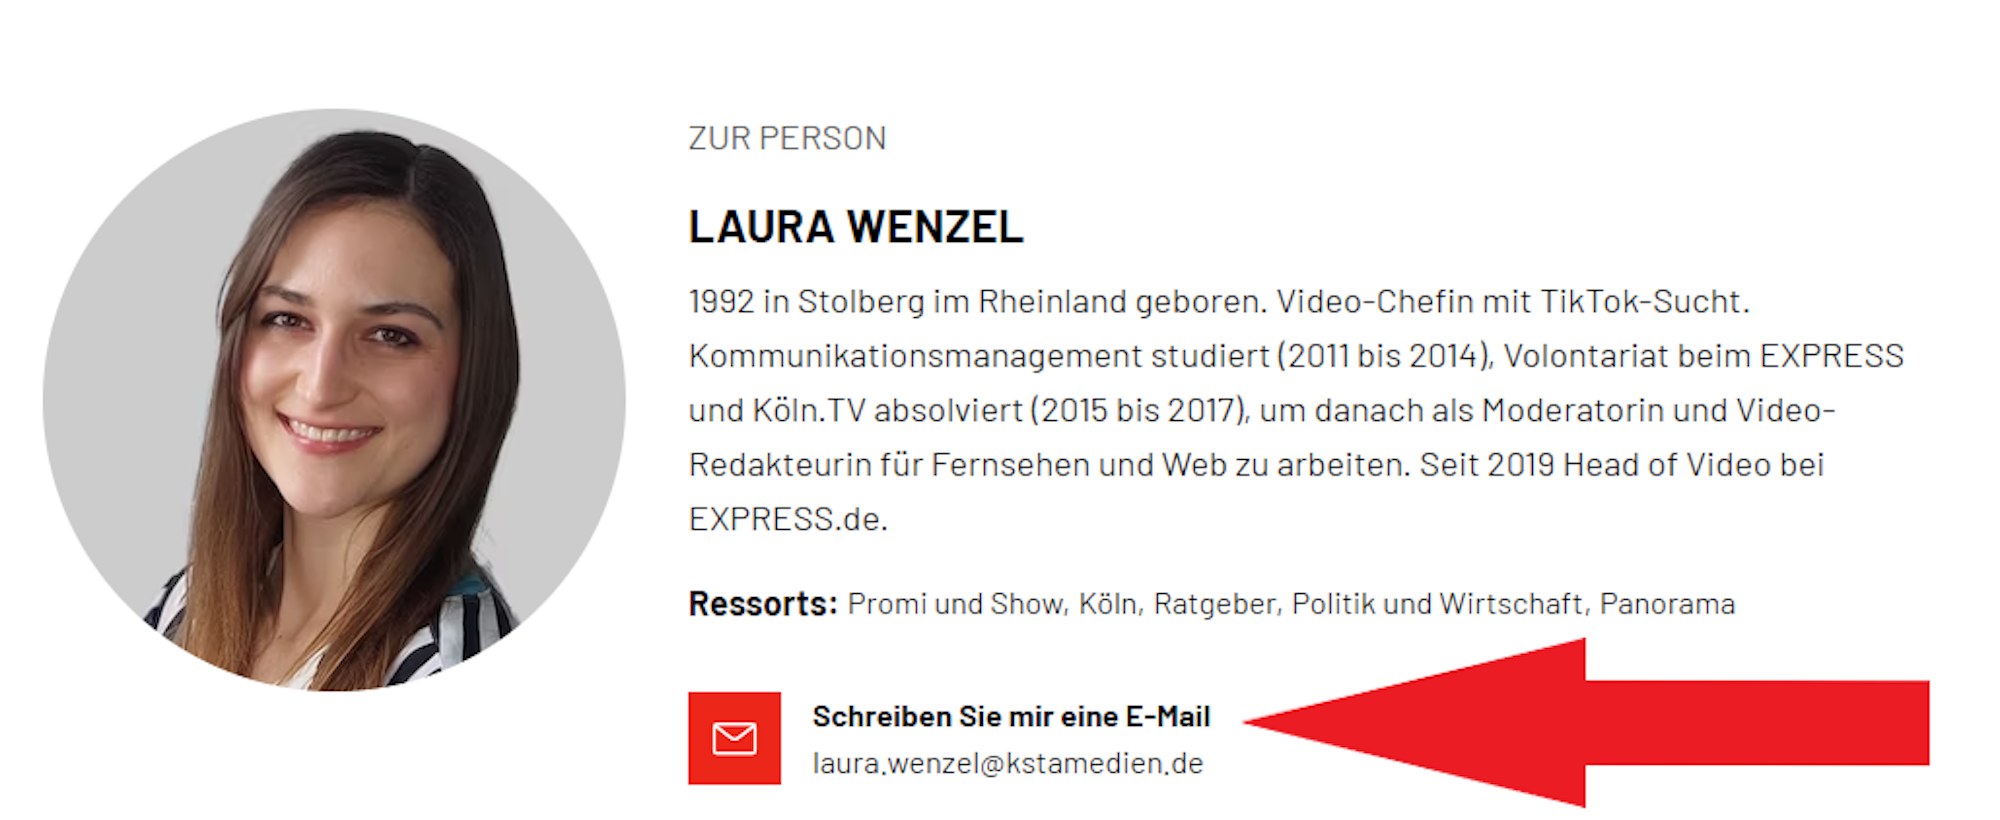 Laura Wenzels Autorenprofil bei EXPRESS.de